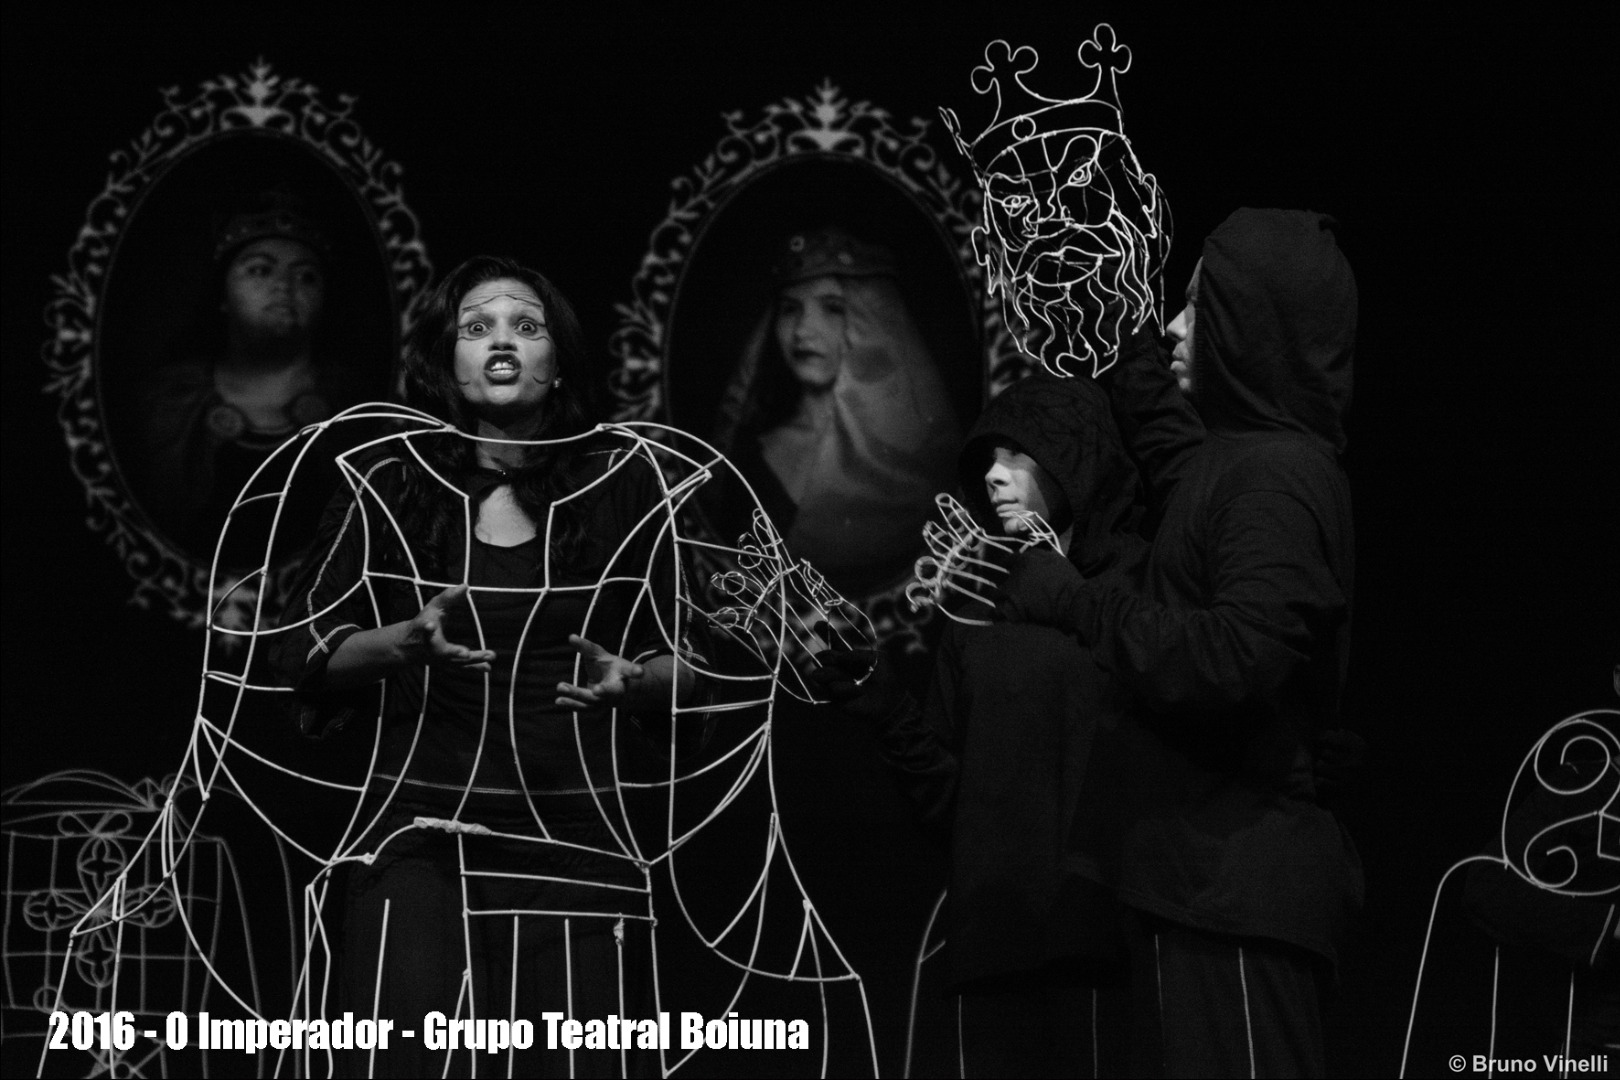 2016 - O Imperador - Grupo Teatral Boiuna Luna